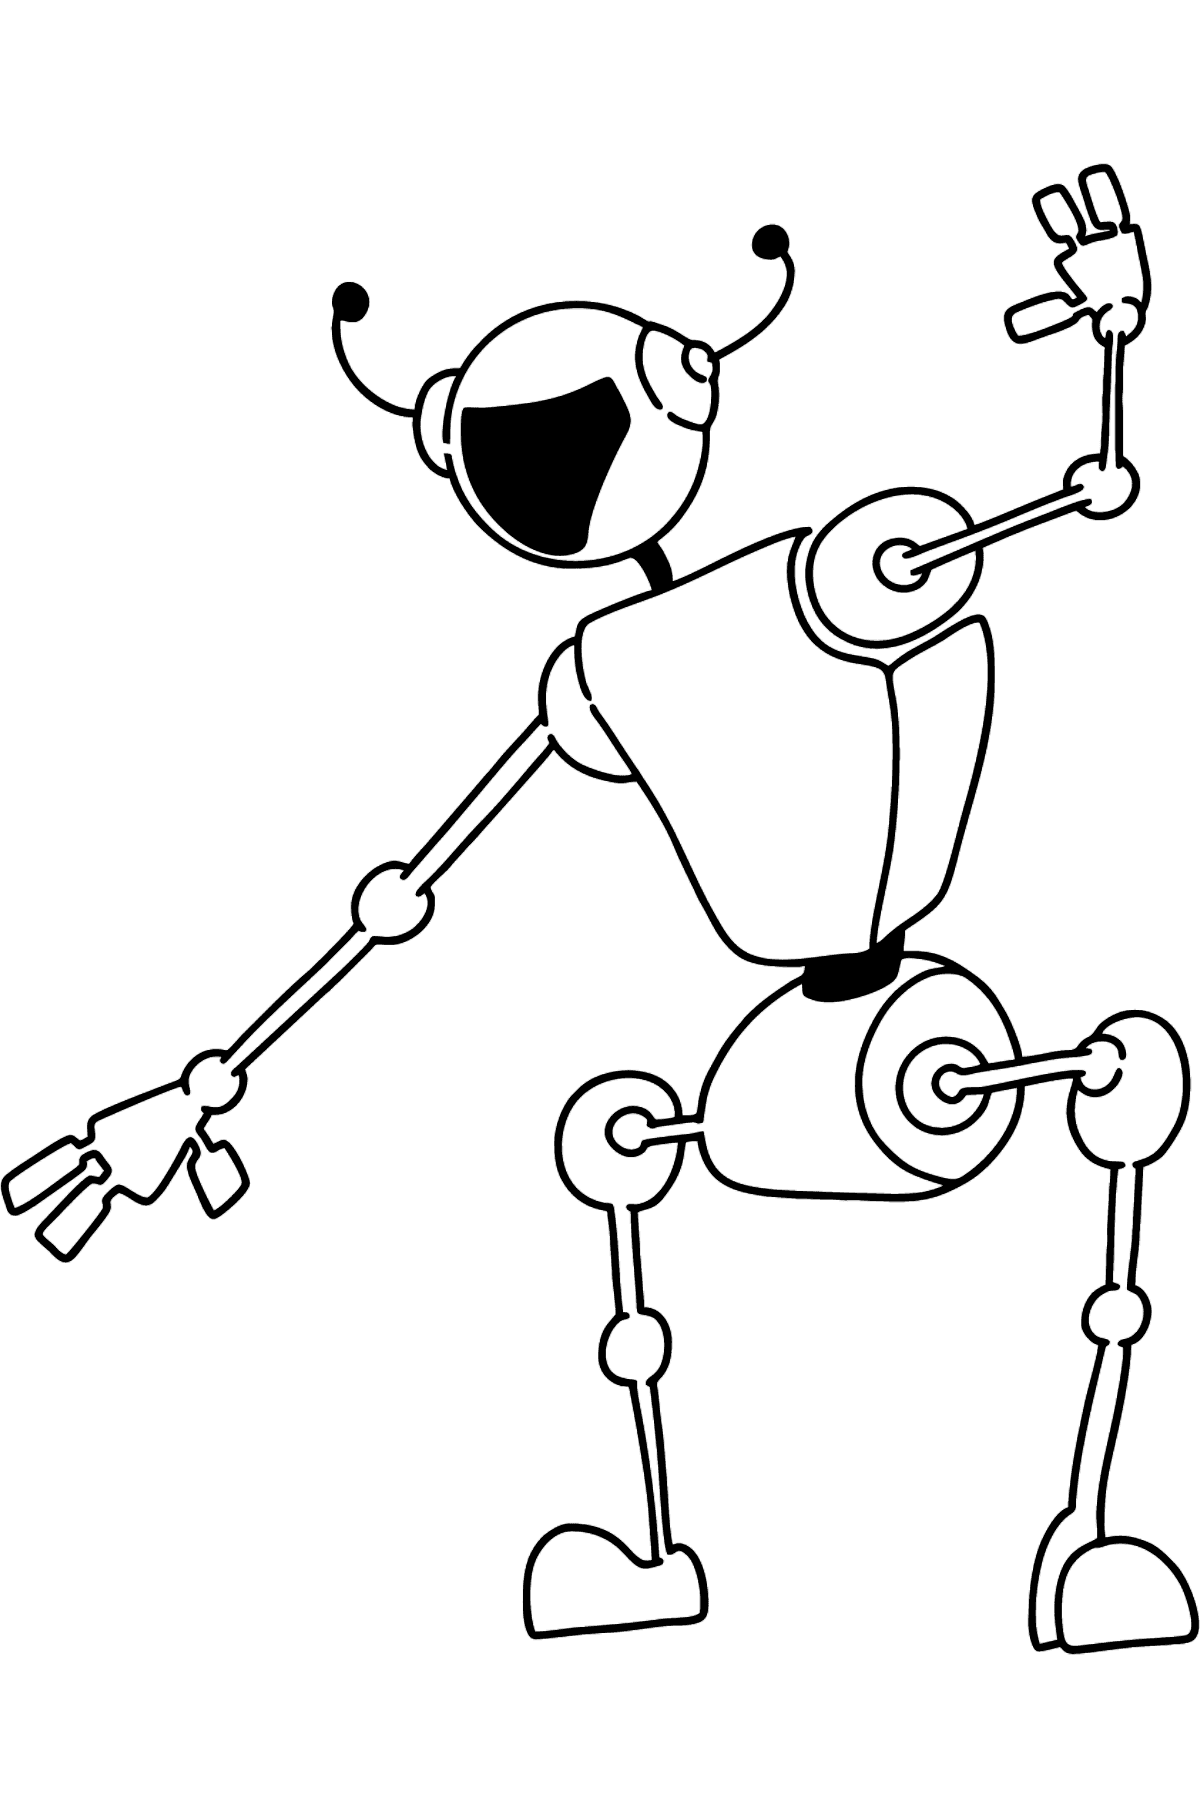 Dibujo de Robot bailando para colorear - Dibujos para Colorear para Niños